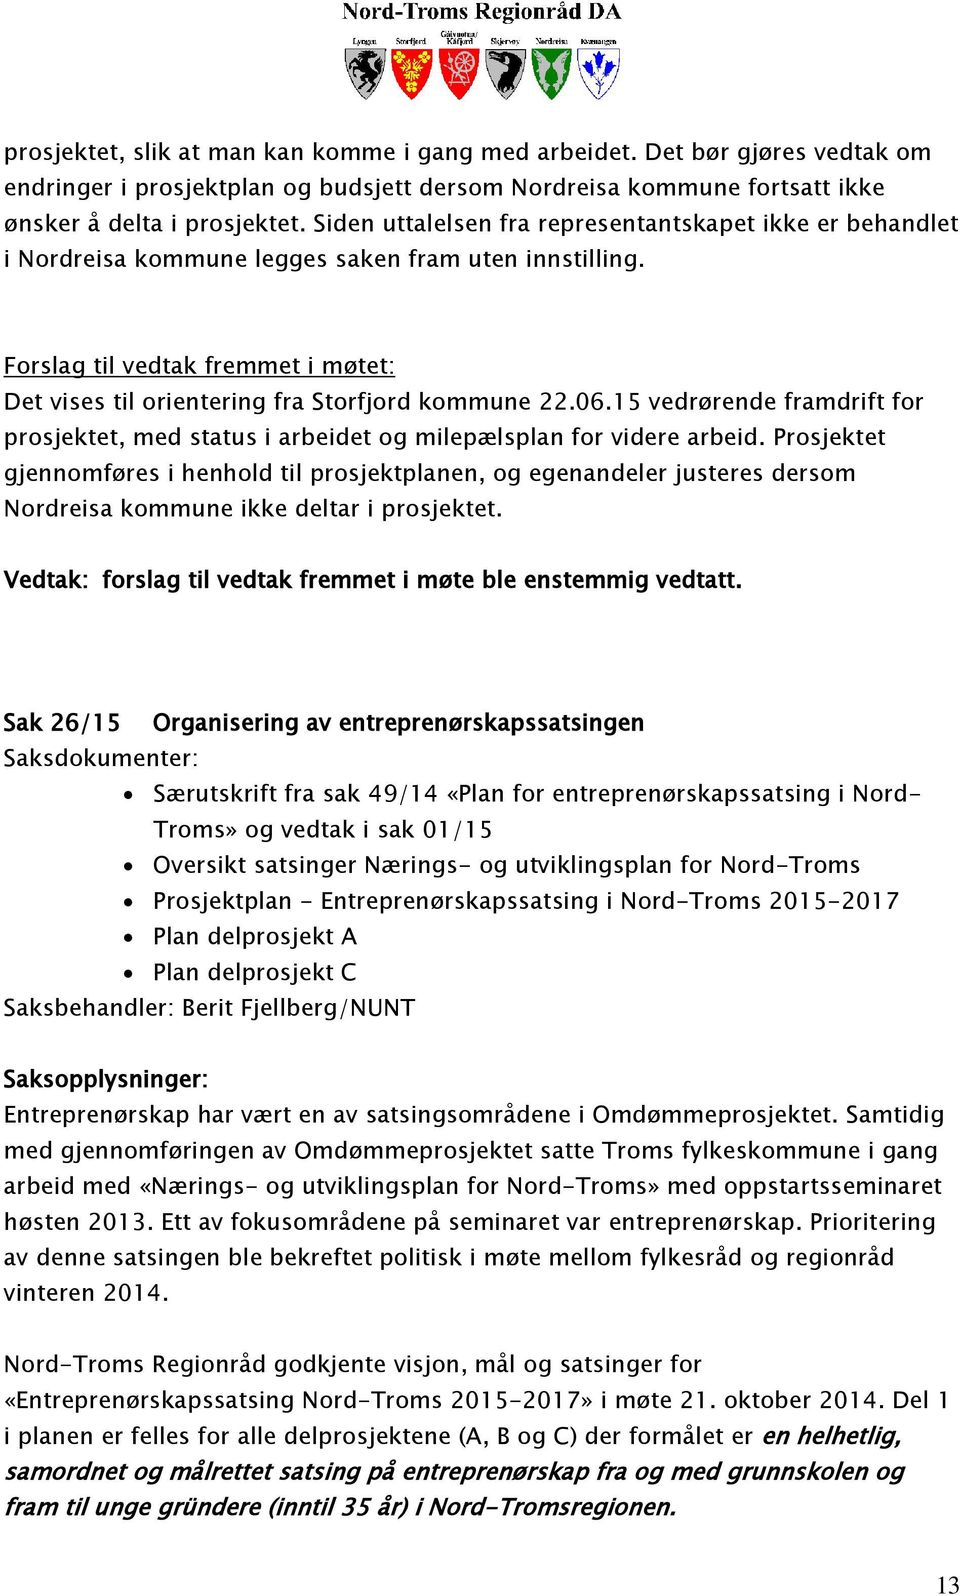 Forslag til vedtak fremmet i møtet: Det vises til orientering fra Storfjord kommune 22.06.15 vedrørende framdrift for prosjektet, med status i arbeidet og milepælsplan for videre arbeid.